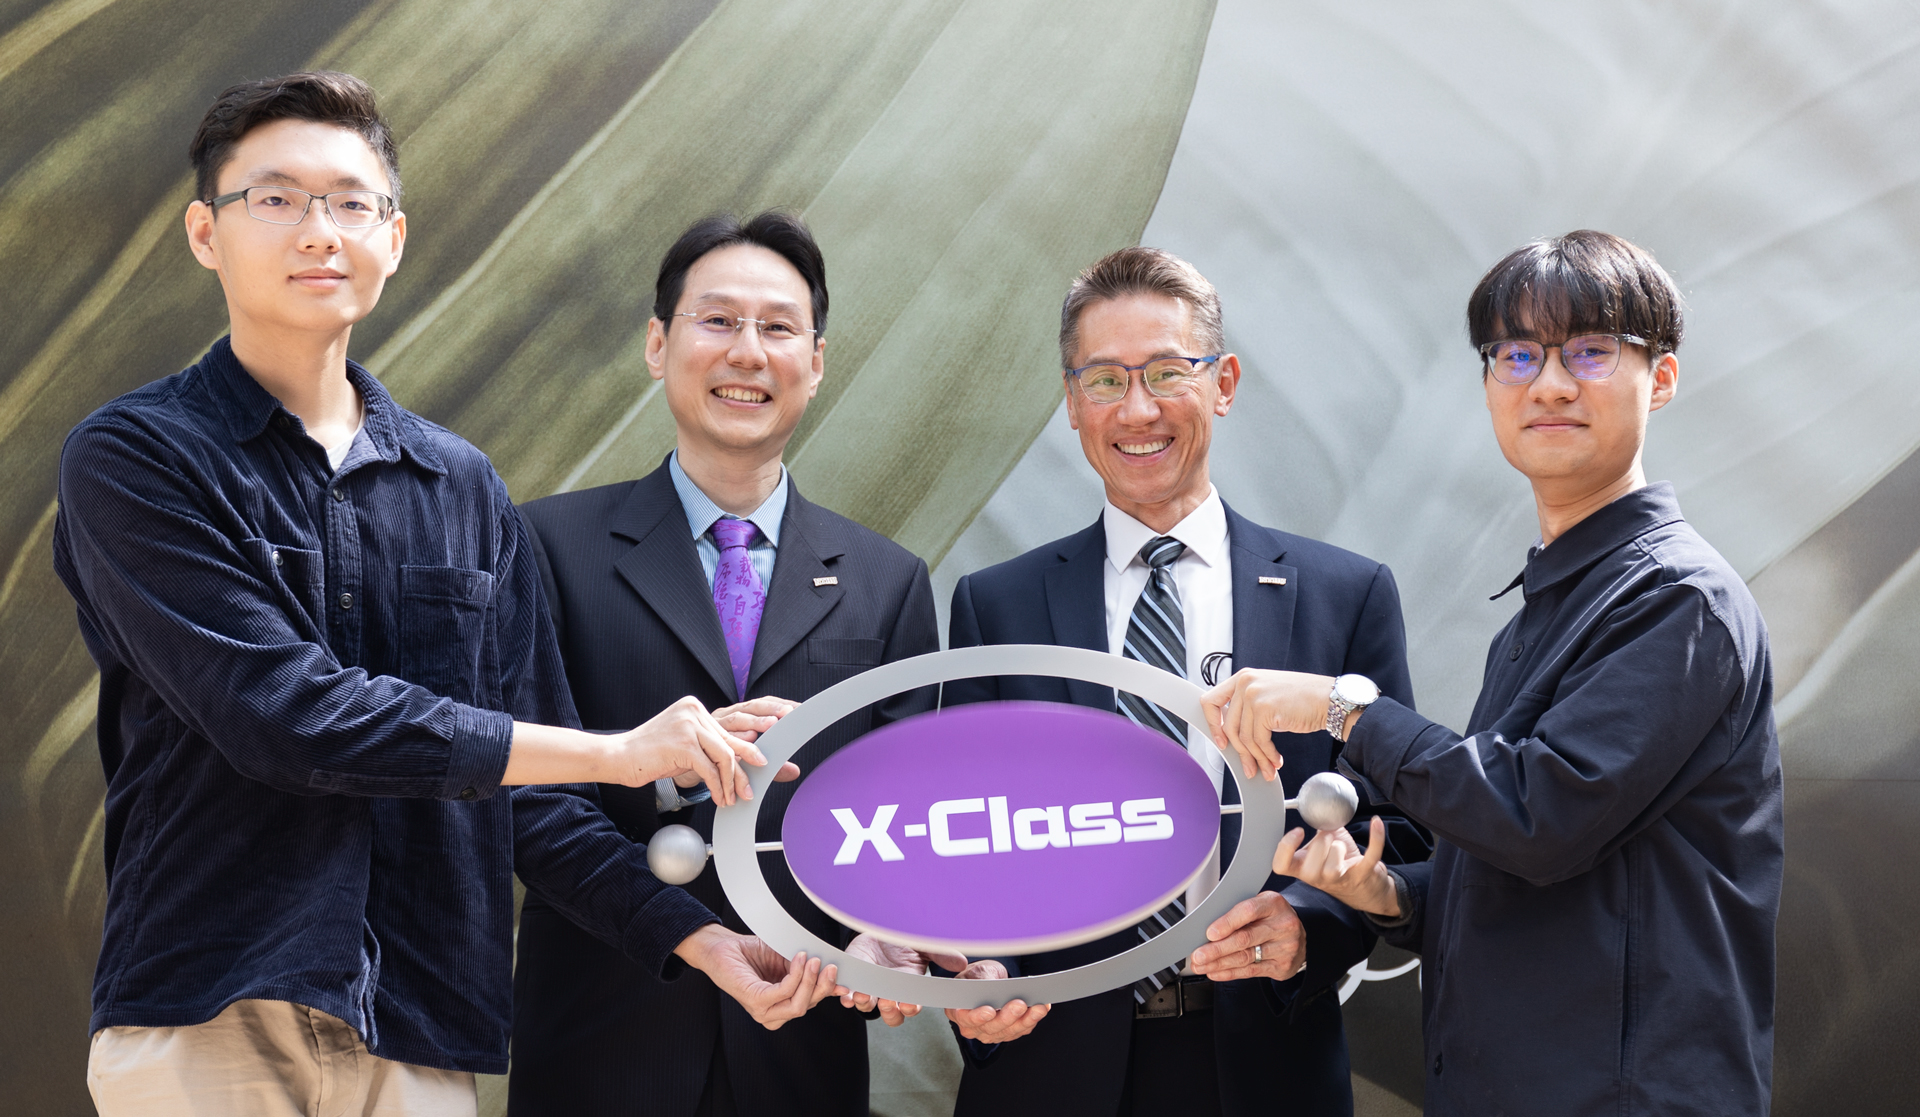 c提升跨領域多元學習 清華首創X-Class